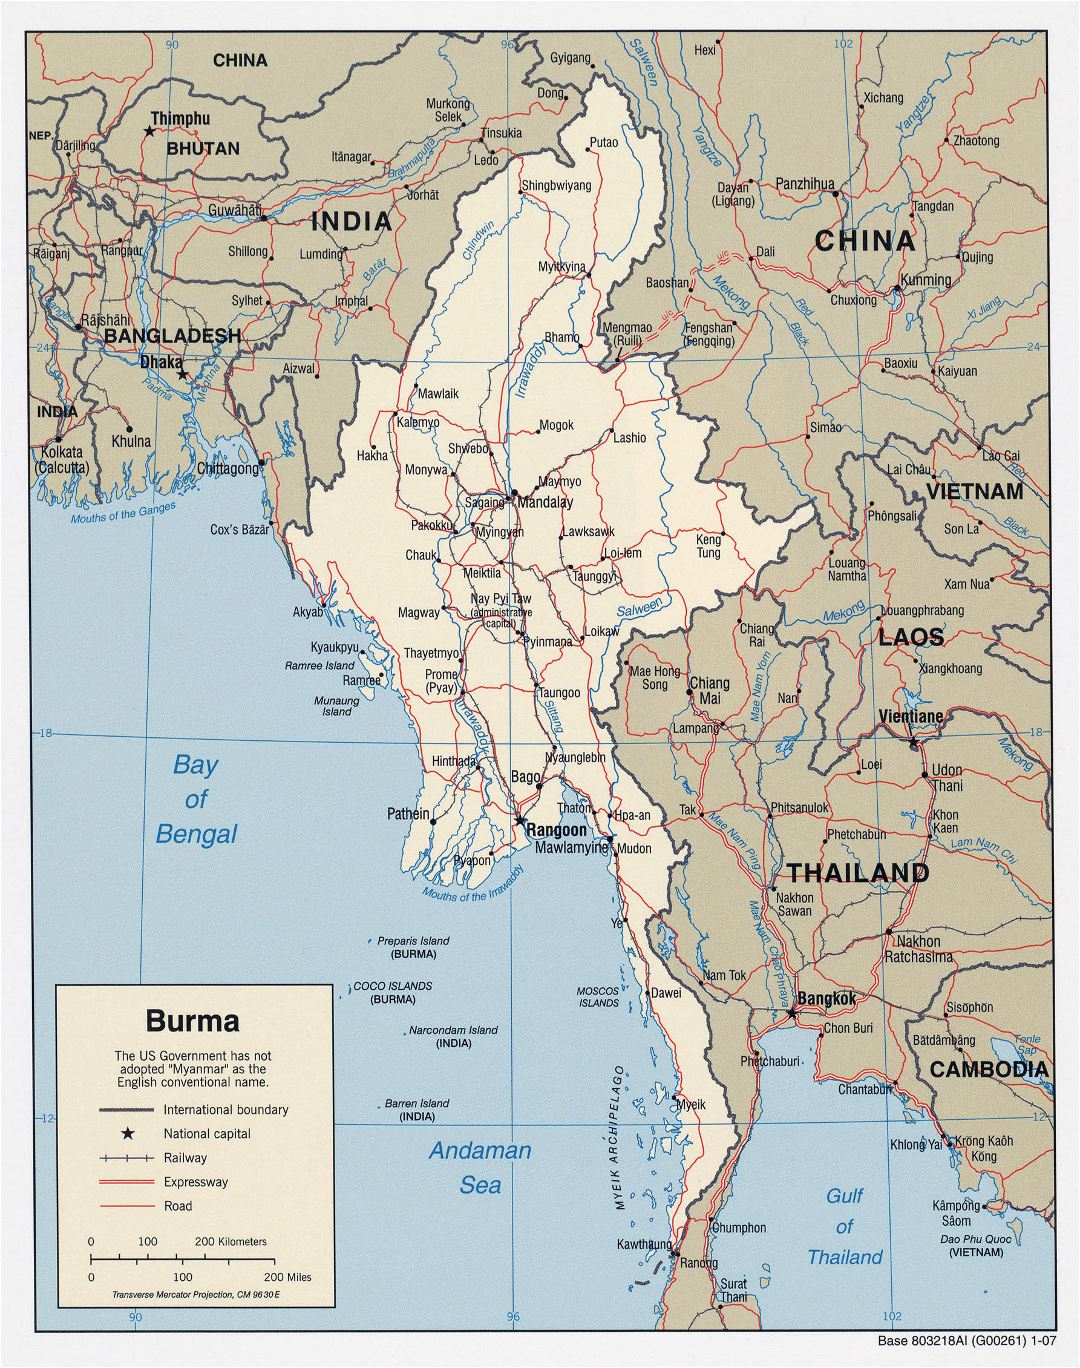 Grande detallado mapa político de Birmania (Myanmar) con carreteras, ferrocarriles y principales ciudades - 2007